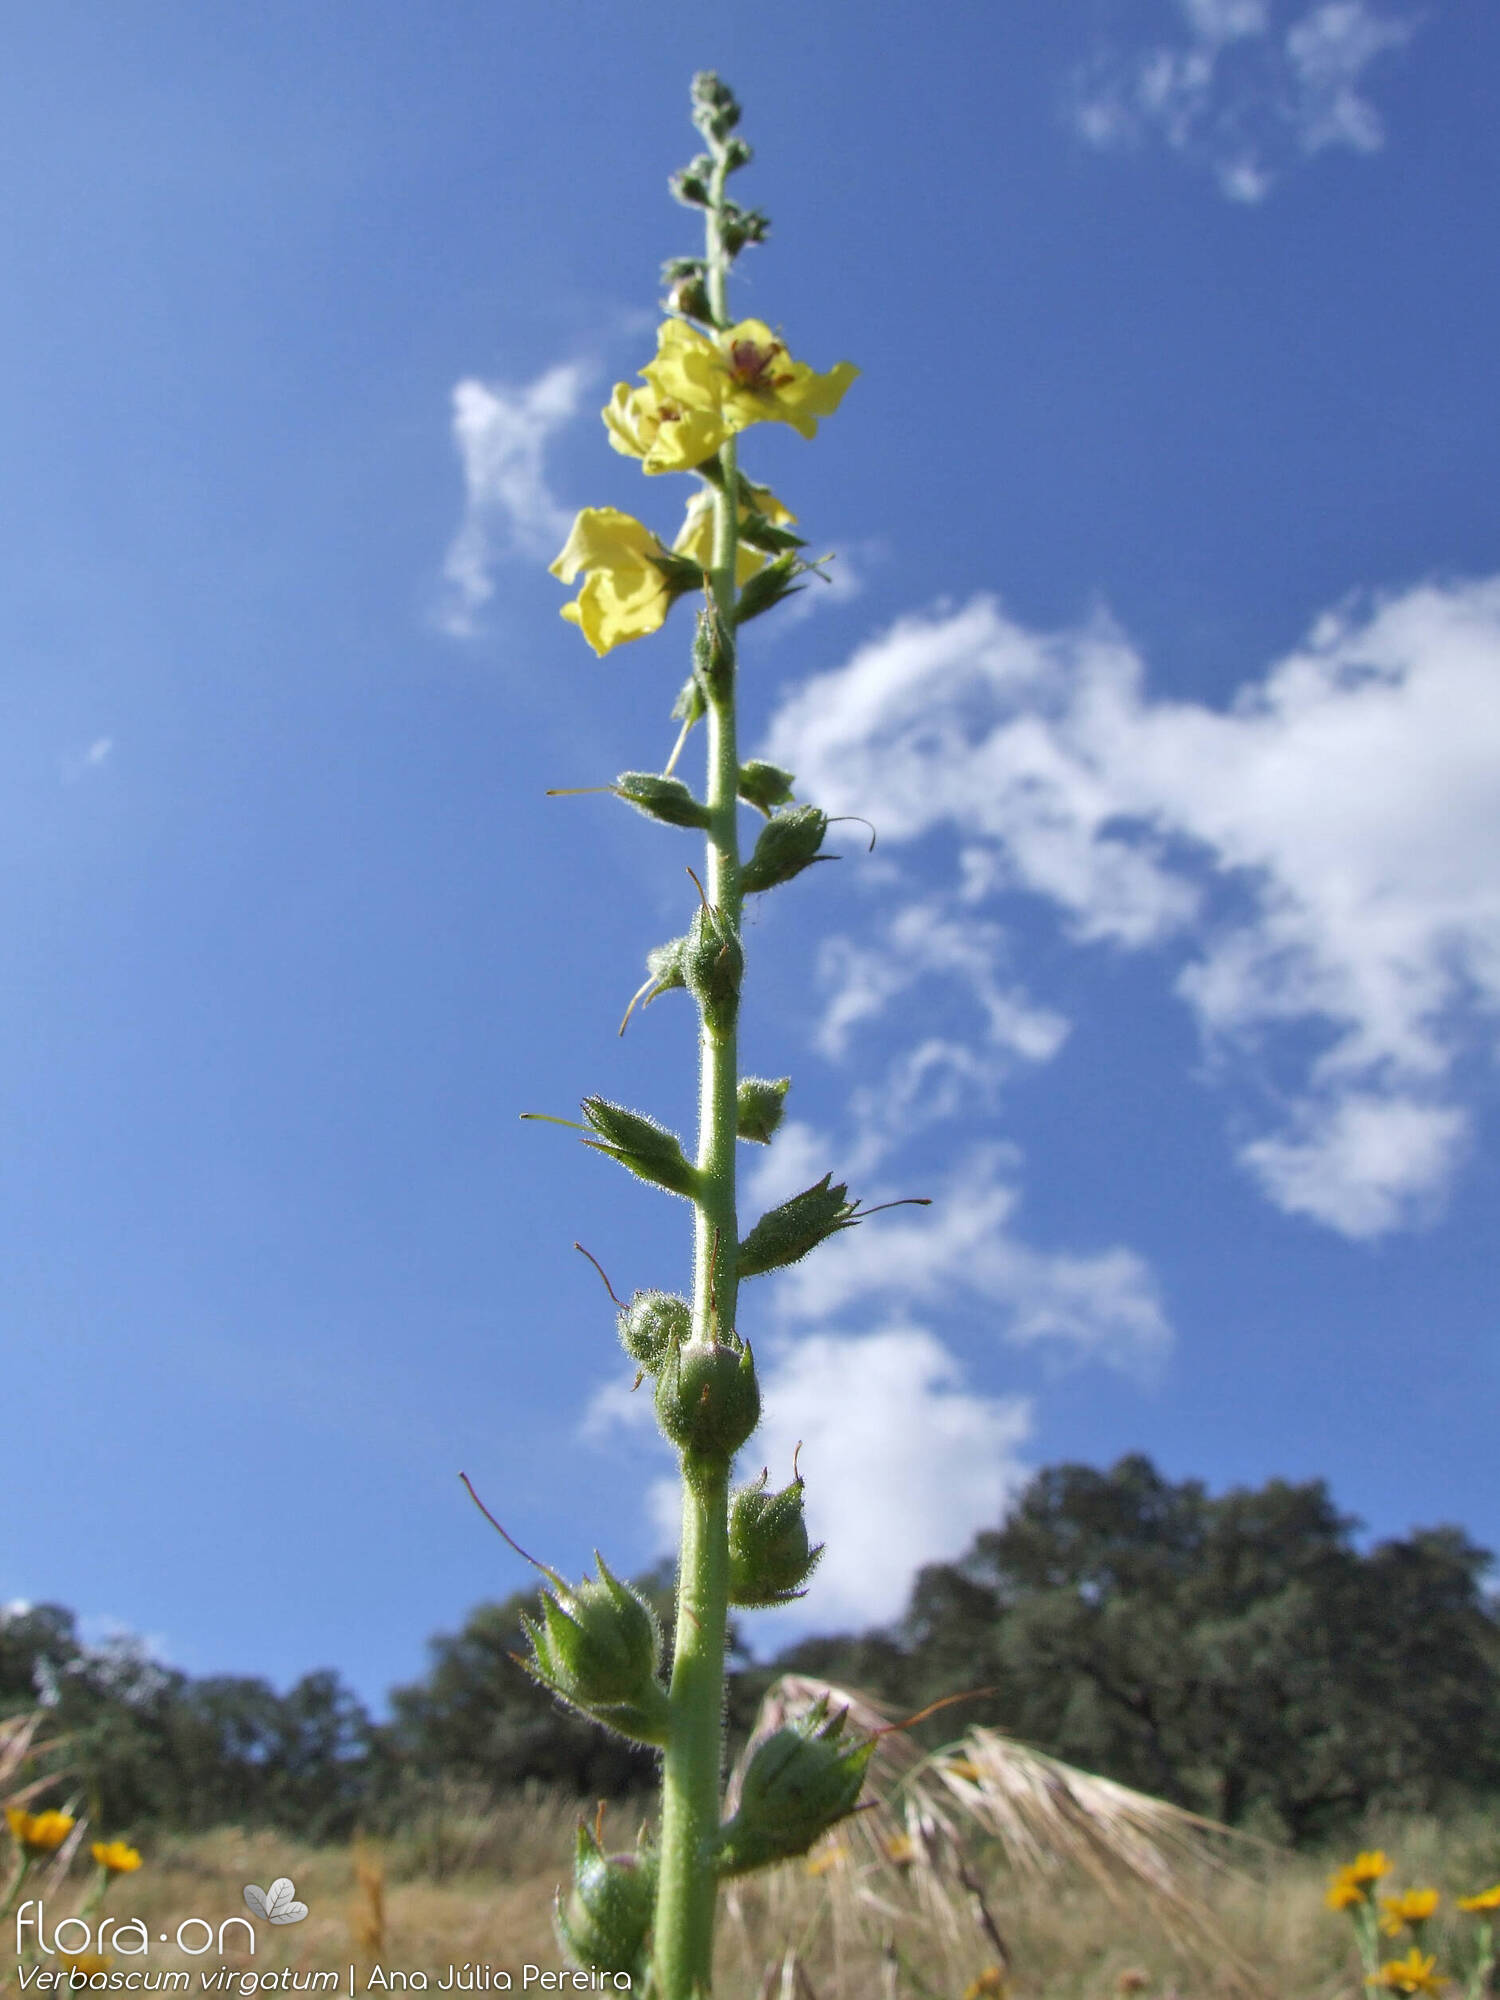 Verbascum virgatum - Flor (geral) | Ana Júlia Pereira; CC BY-NC 4.0